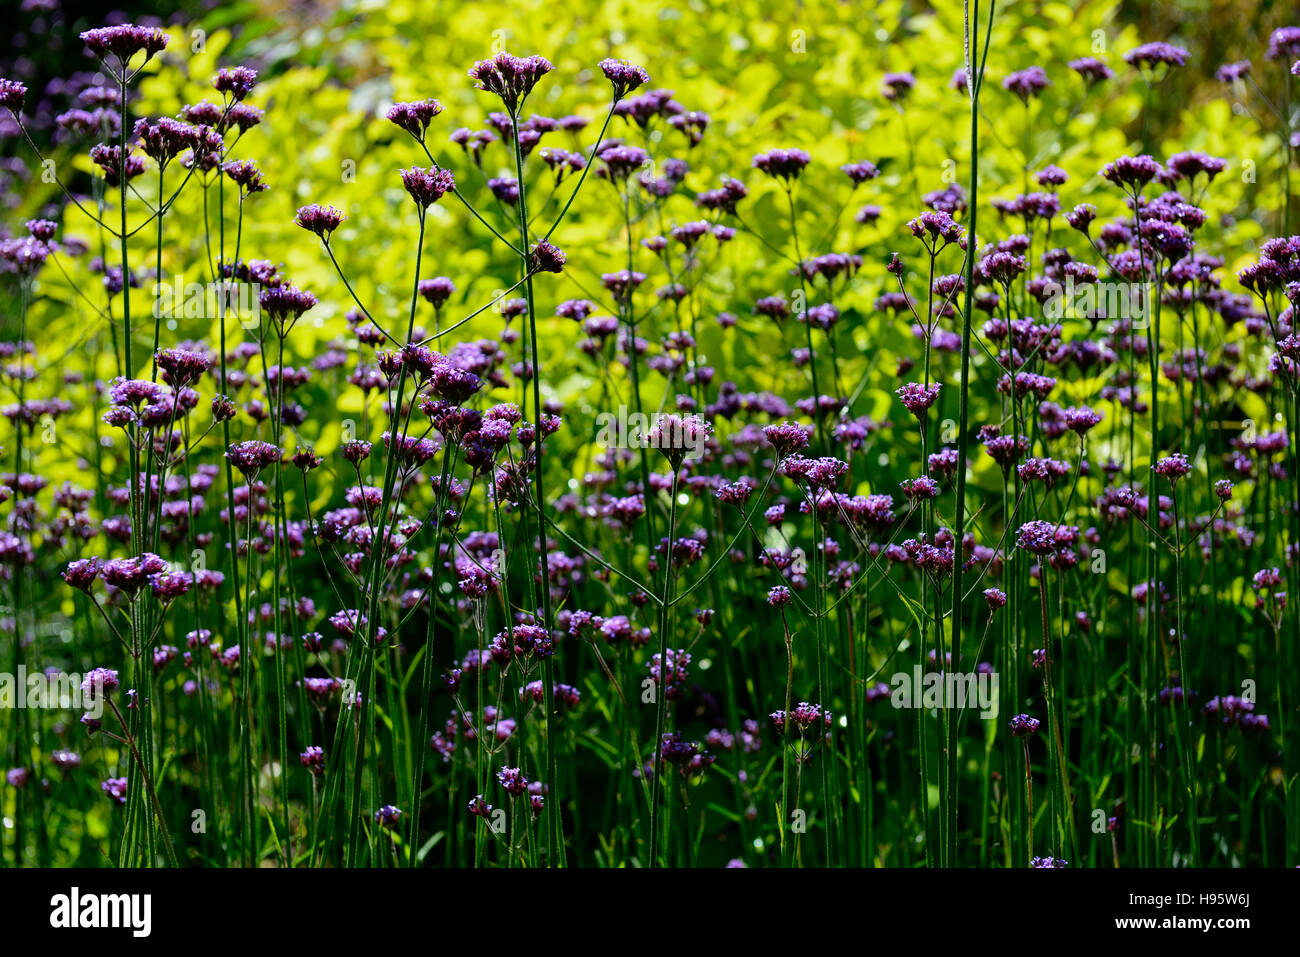 Verbena bonariensis purple fiore fiori fioritura di progettazione display confine letto retroilluminato foglie verde fogliame contrasto floreale RM Foto Stock